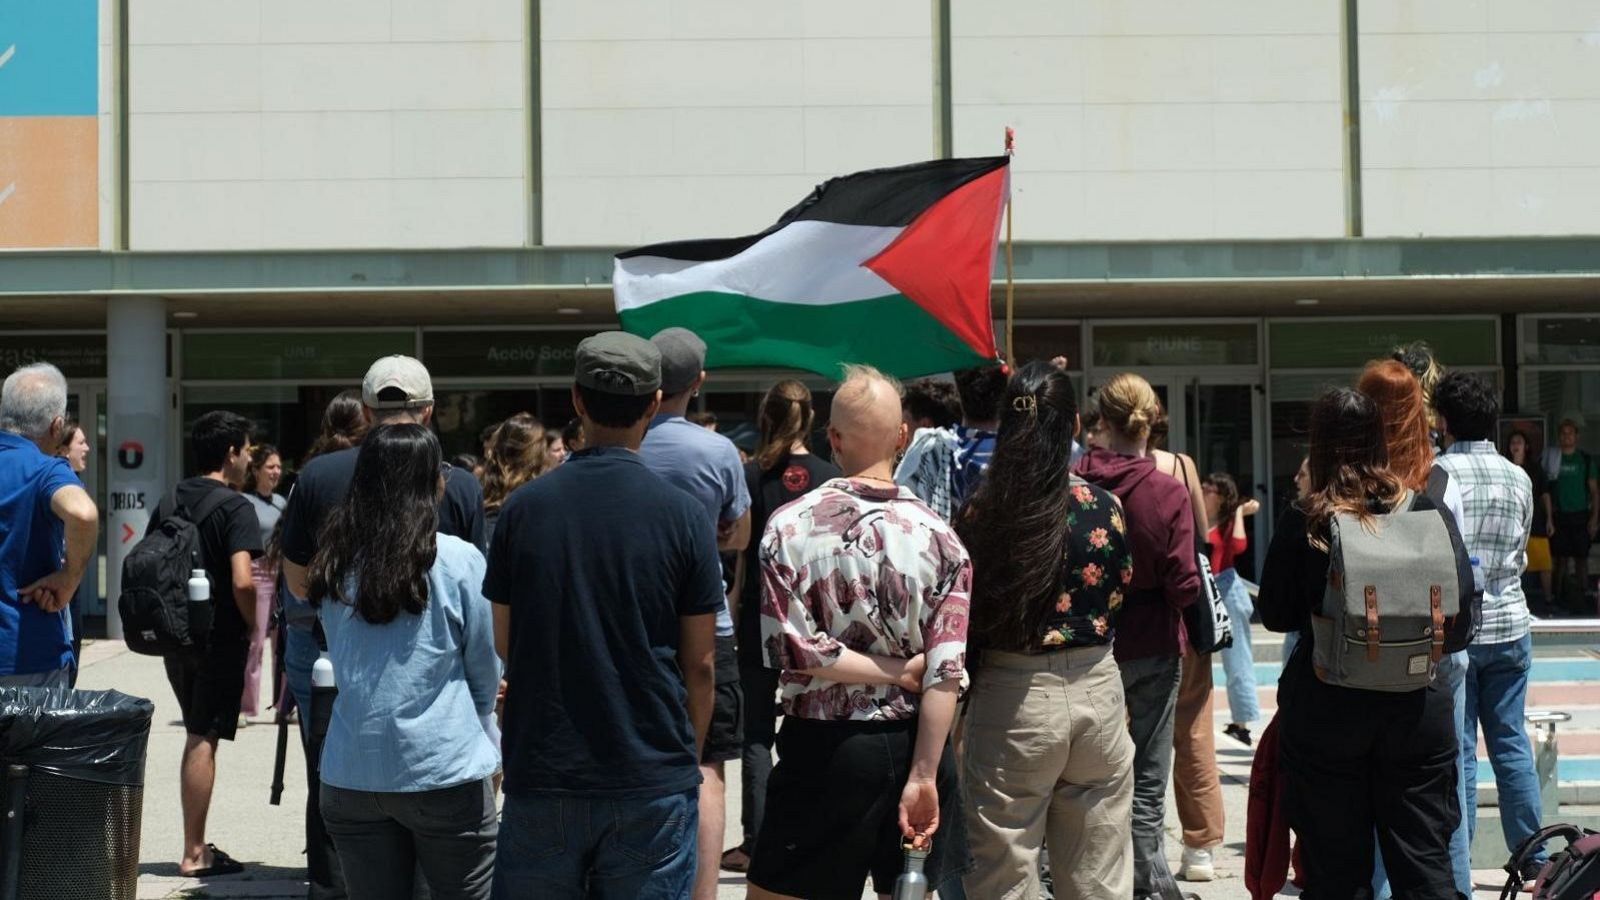 Los estudiantes desconvocan la acampada propalestina en la UAB tras no lograr que el centro rompa relaciones con Israel